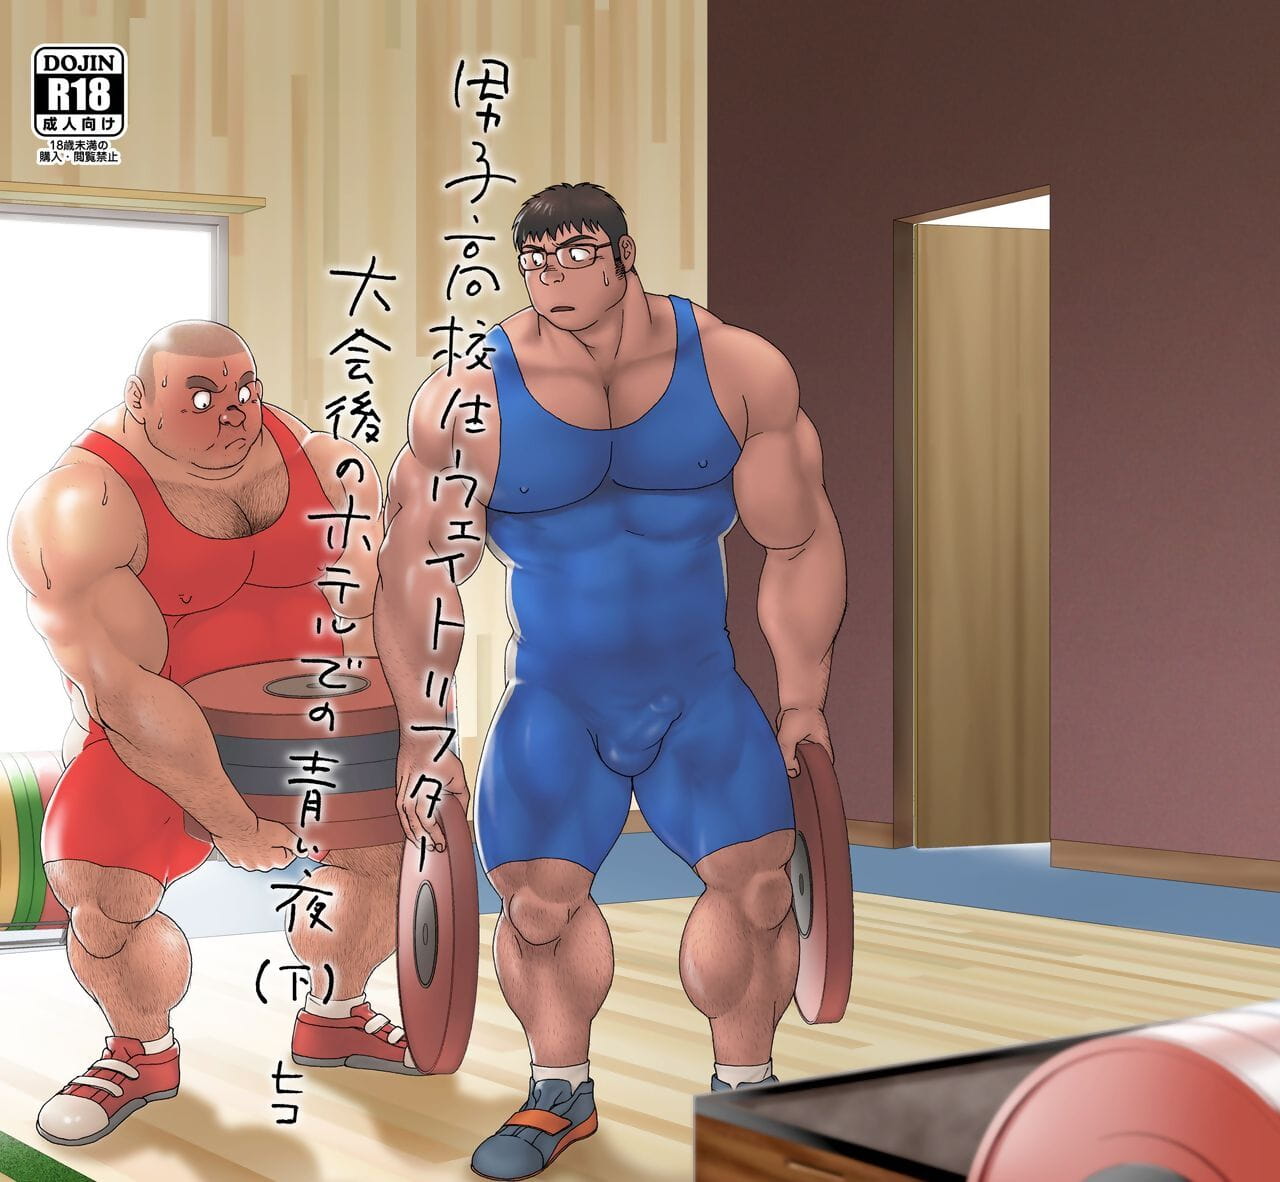 漫画以及动画之中 koukousei 举重运动员 泰开 去 没有 酒店 德 没有 葵 夜的 page 1